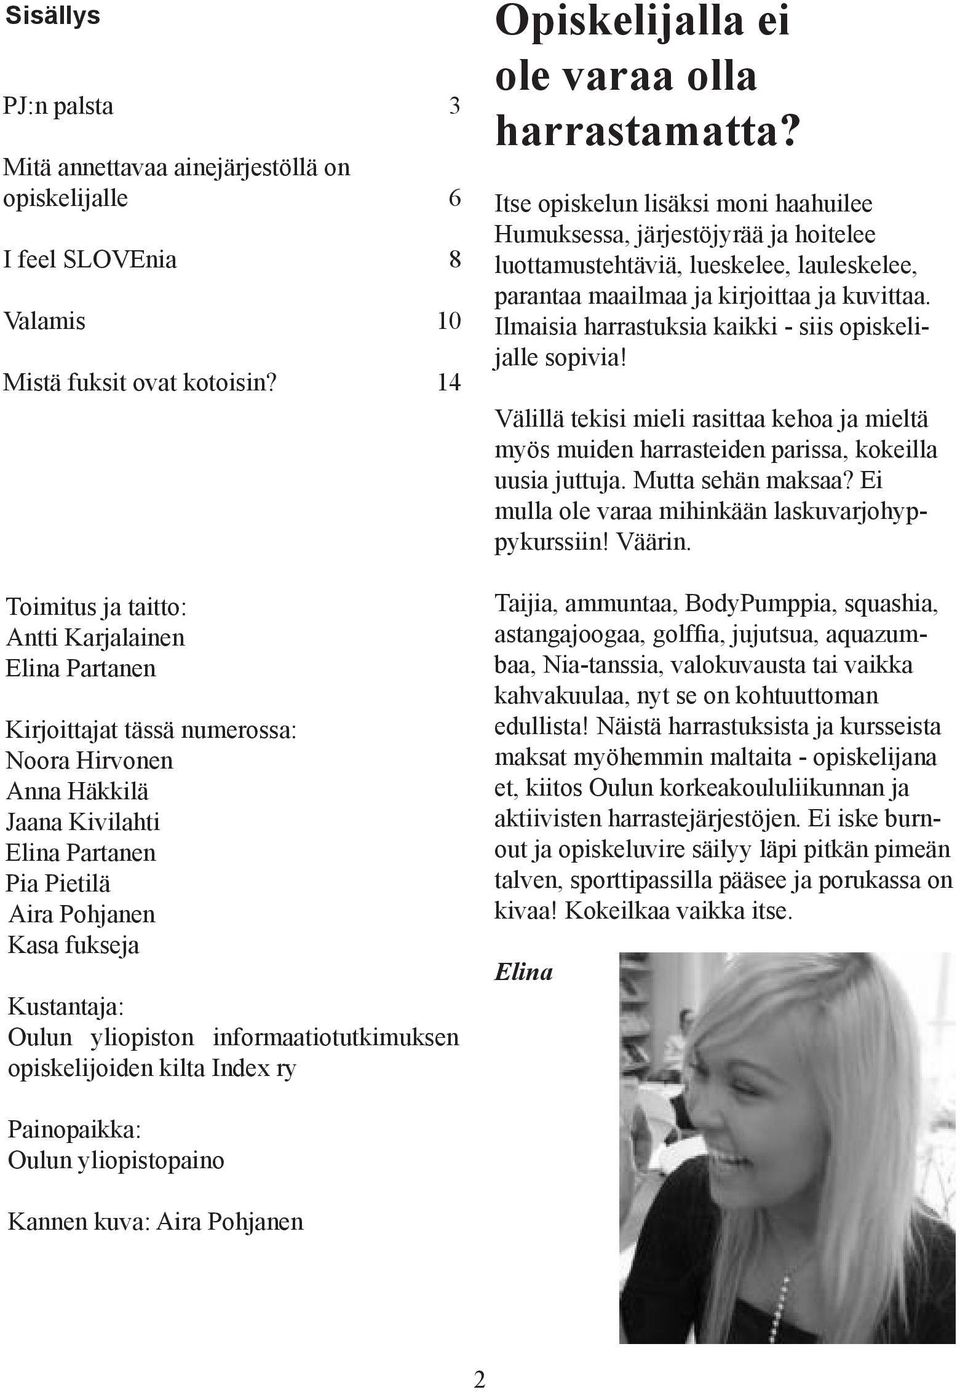 Oulun yliopiston informaatiotutkimuksen opiskelijoiden kilta Index ry Opiskelijalla ei ole varaa olla harrastamatta?